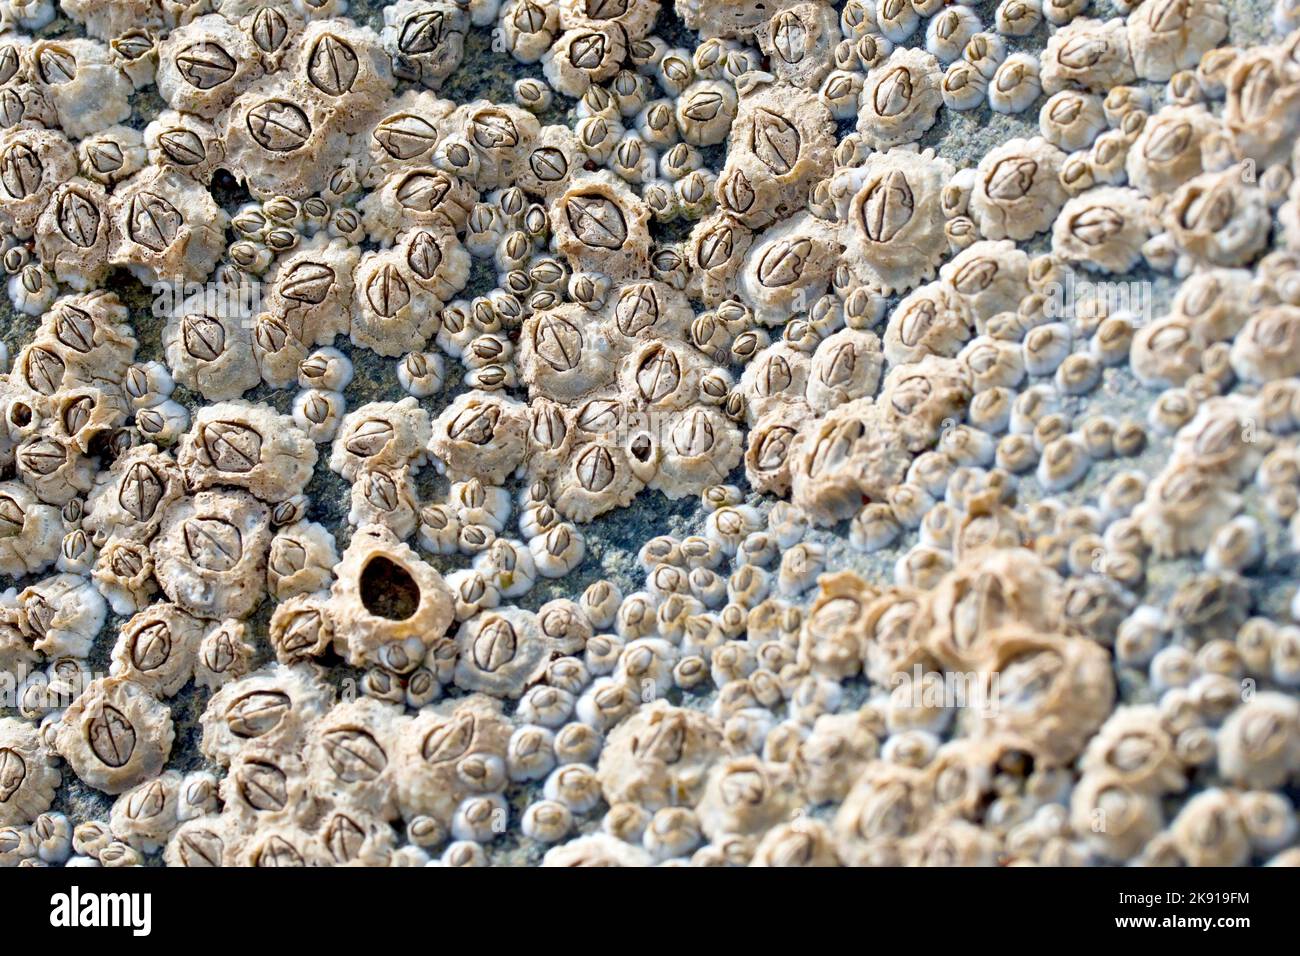 Acorn Barnacles (semibalanus balanoides), primo piano di un gruppo del barnacle più comune trovato intorno alle rive del Regno Unito. Foto Stock